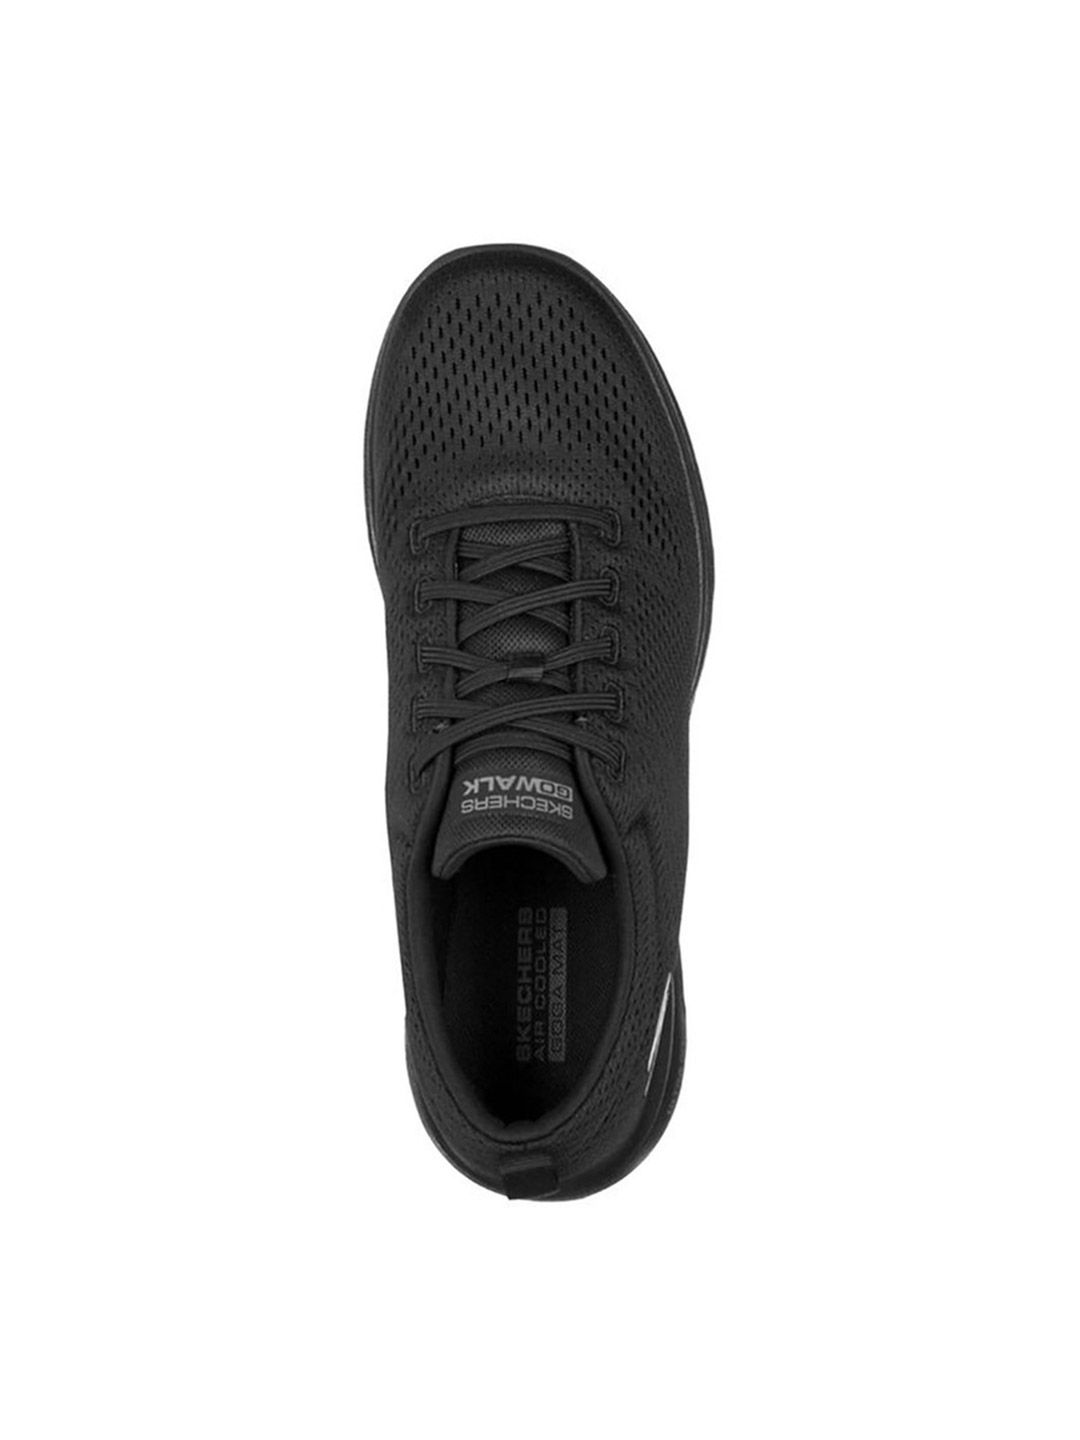 Buy Skechers Mens Go Walk 5 - Warwick Black Sports Shoes from Fancode Shop